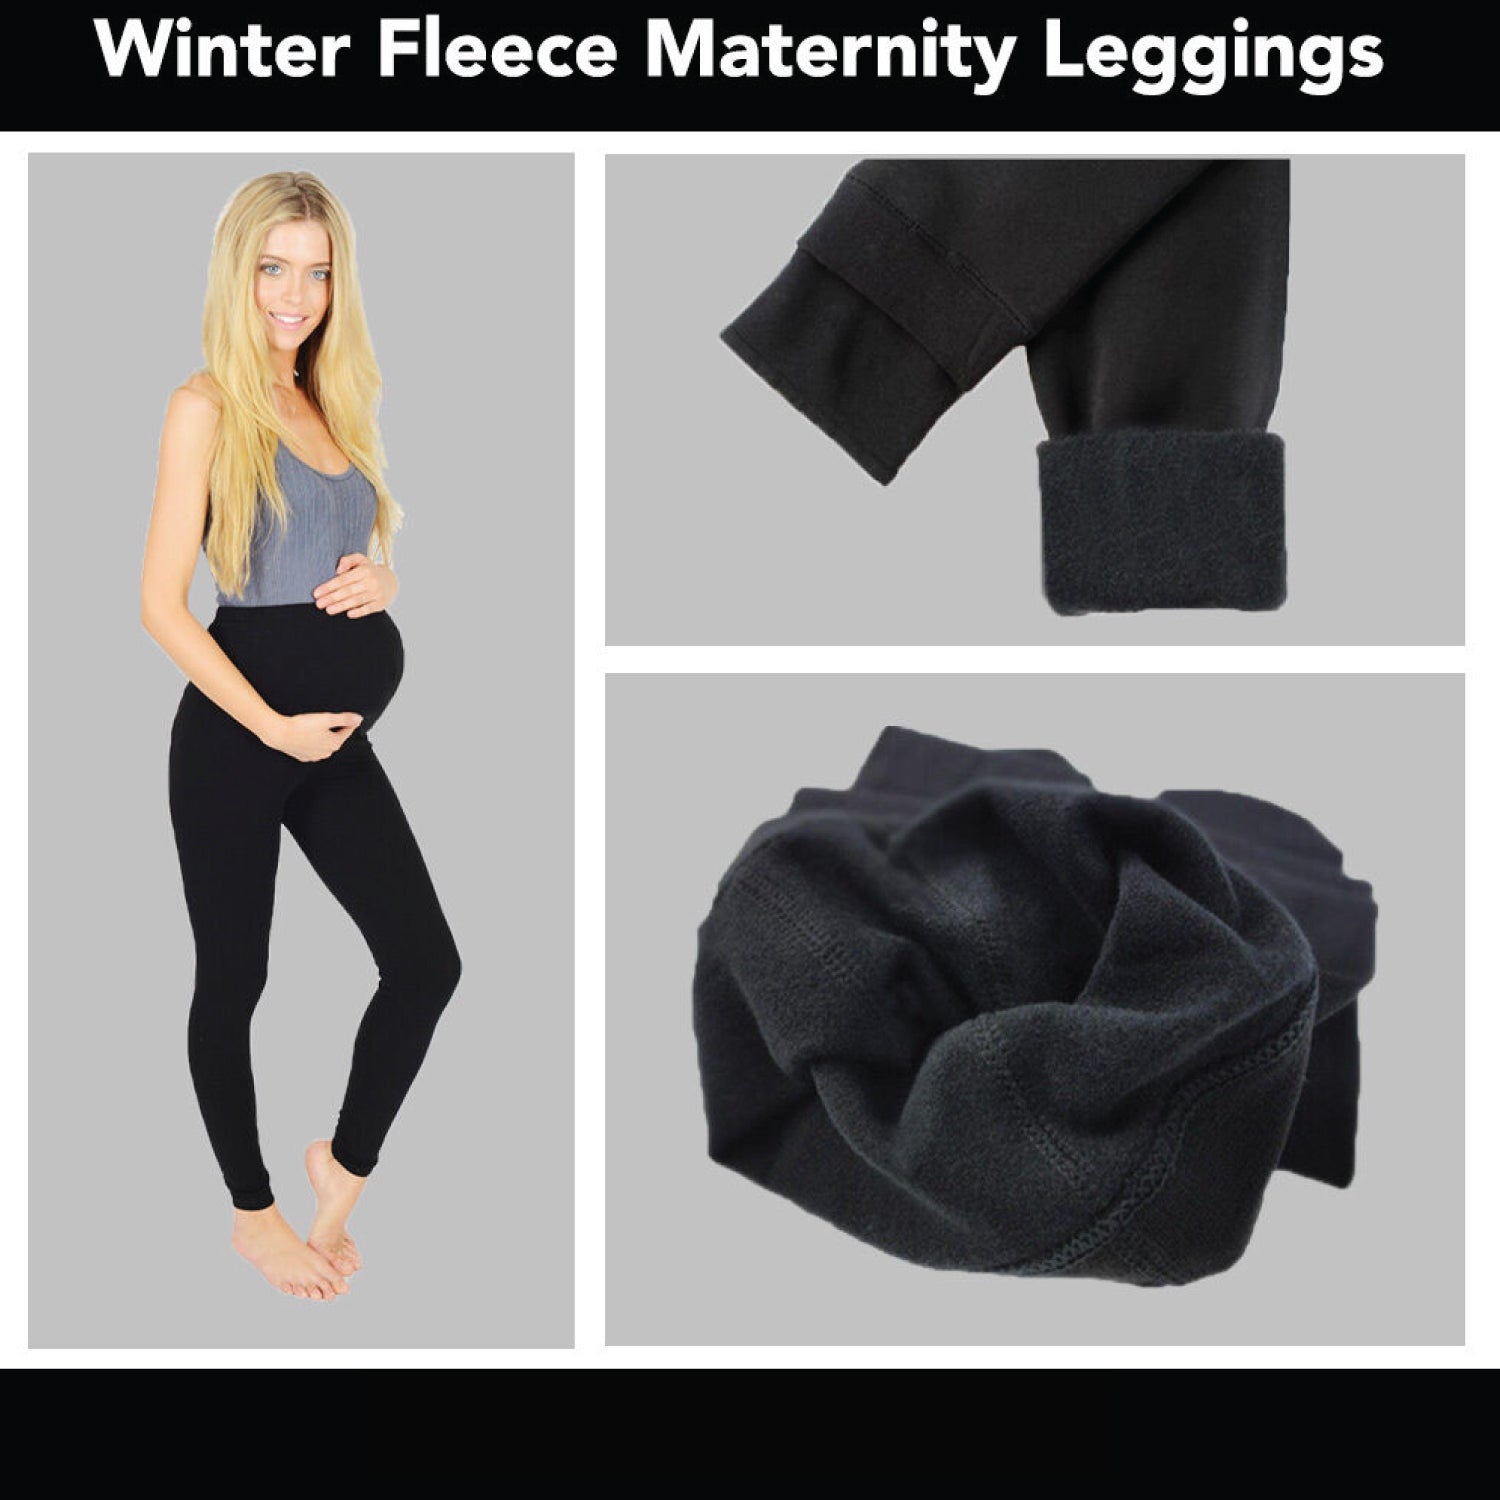 thermal maternity leggings